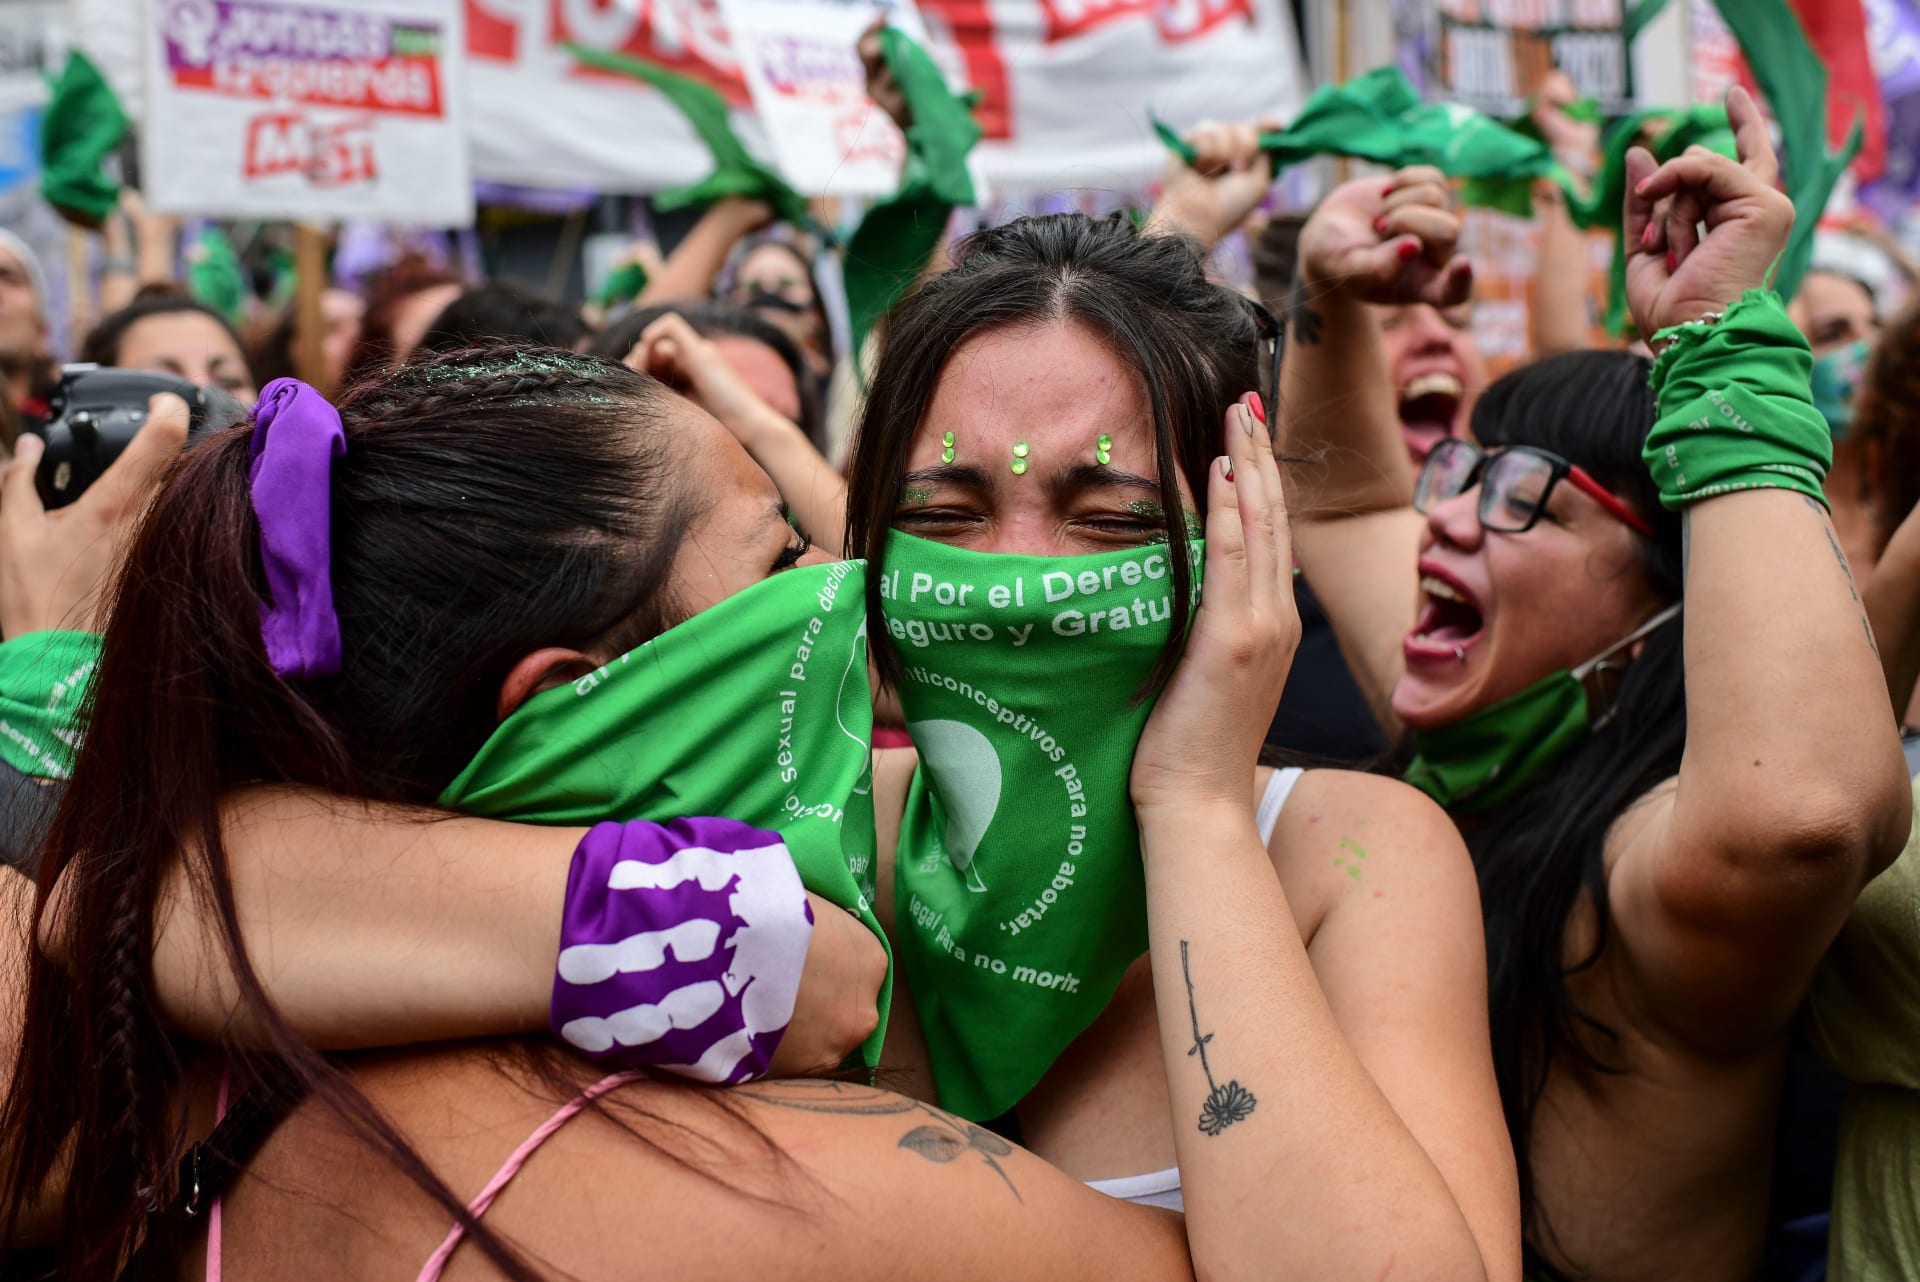 الأرجنتين: مجلس النواب يوافق على مشروع قانون يسمح بالإجهاض بجميع الحالات